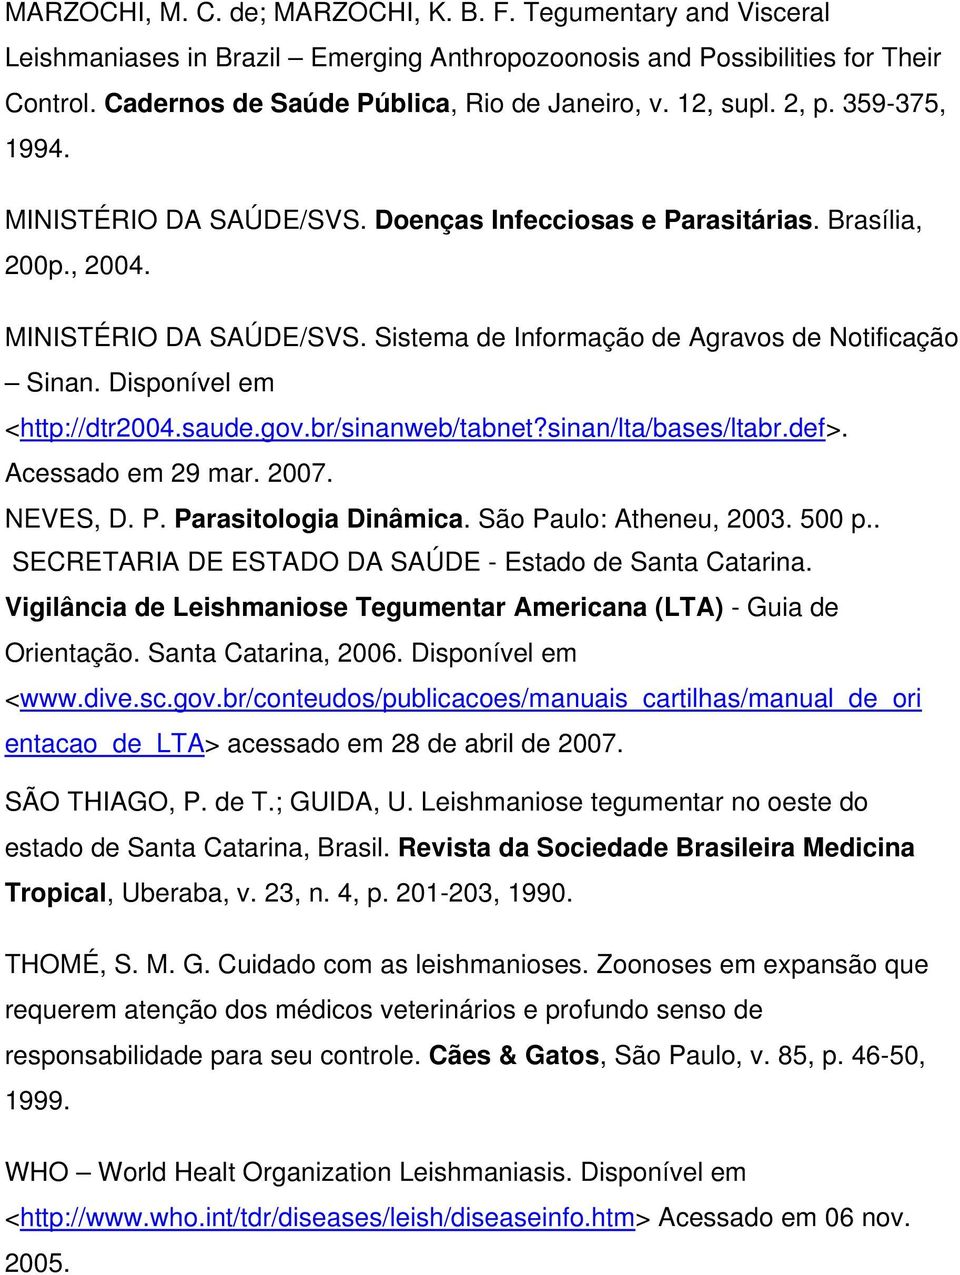 Disponível em <http://dtr2004.saude.gov.br/sinanweb/tabnet?sinan/lta/bases/ltabr.def>. Acessado em 29 mar. 2007. NEVES, D. P. Parasitologia Dinâmica. São Paulo: Atheneu, 2003. 500 p.